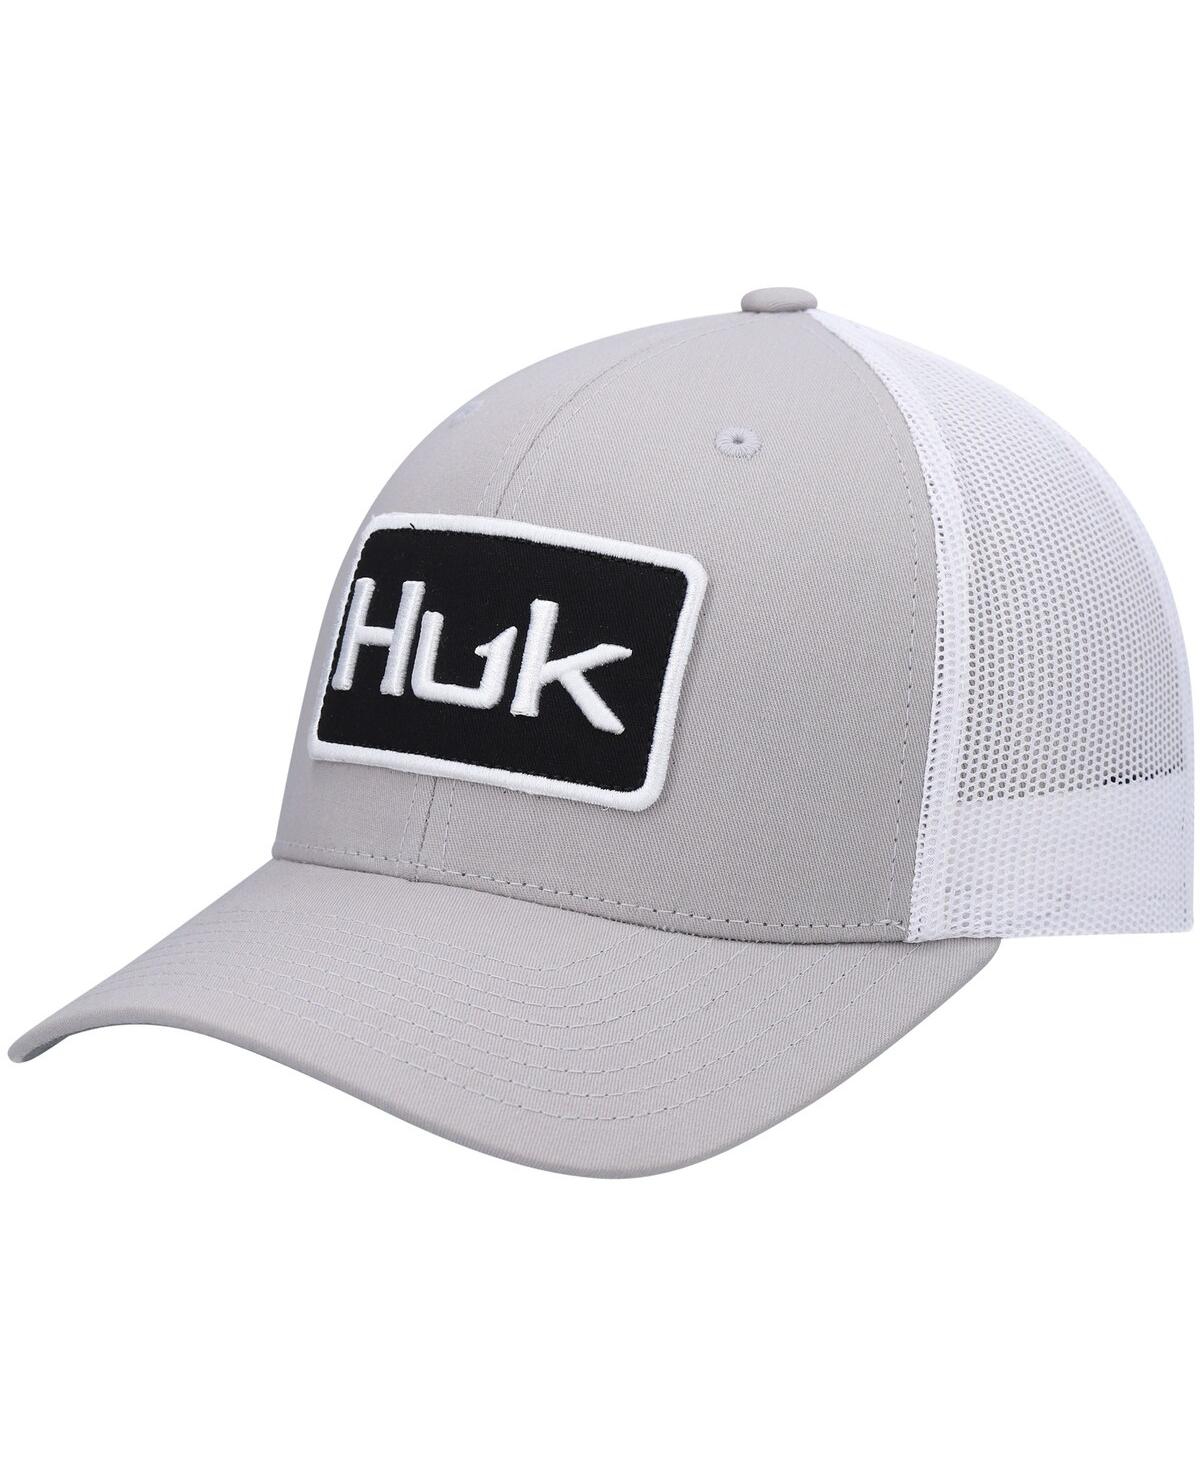 Men's Huk Gray Solid Trucker Snapback Hat - Gray